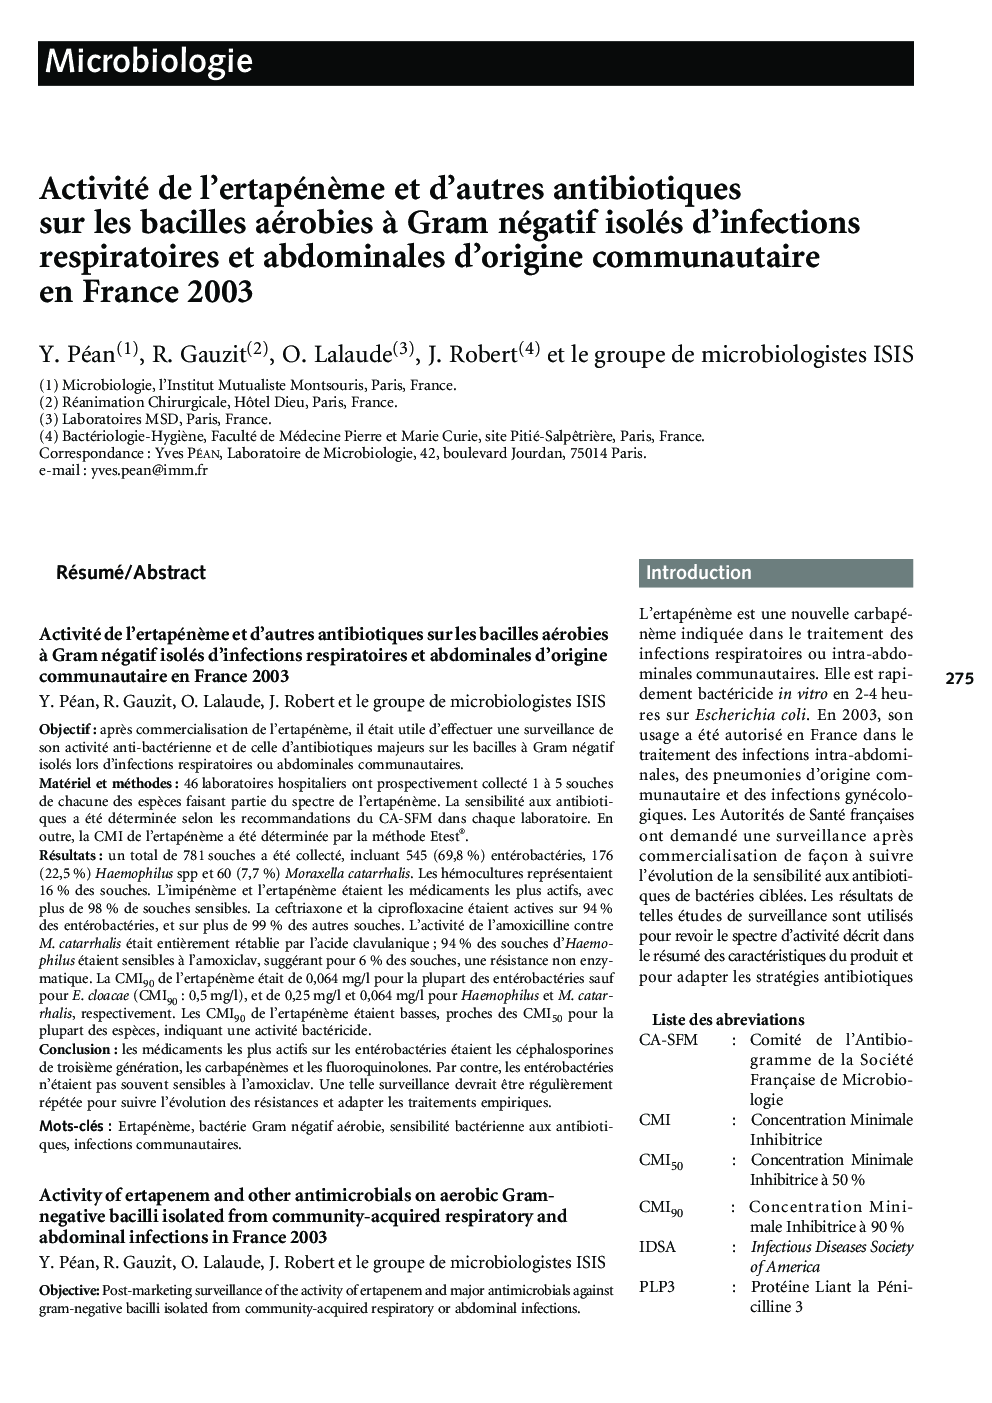 Activité de l'ertapénÃ¨me et d'autres antibiotiques sur les bacilles aérobies Ã  Gram négatif isolés d'infections respiratoires et abdominales d'origine communautaire en France 2003